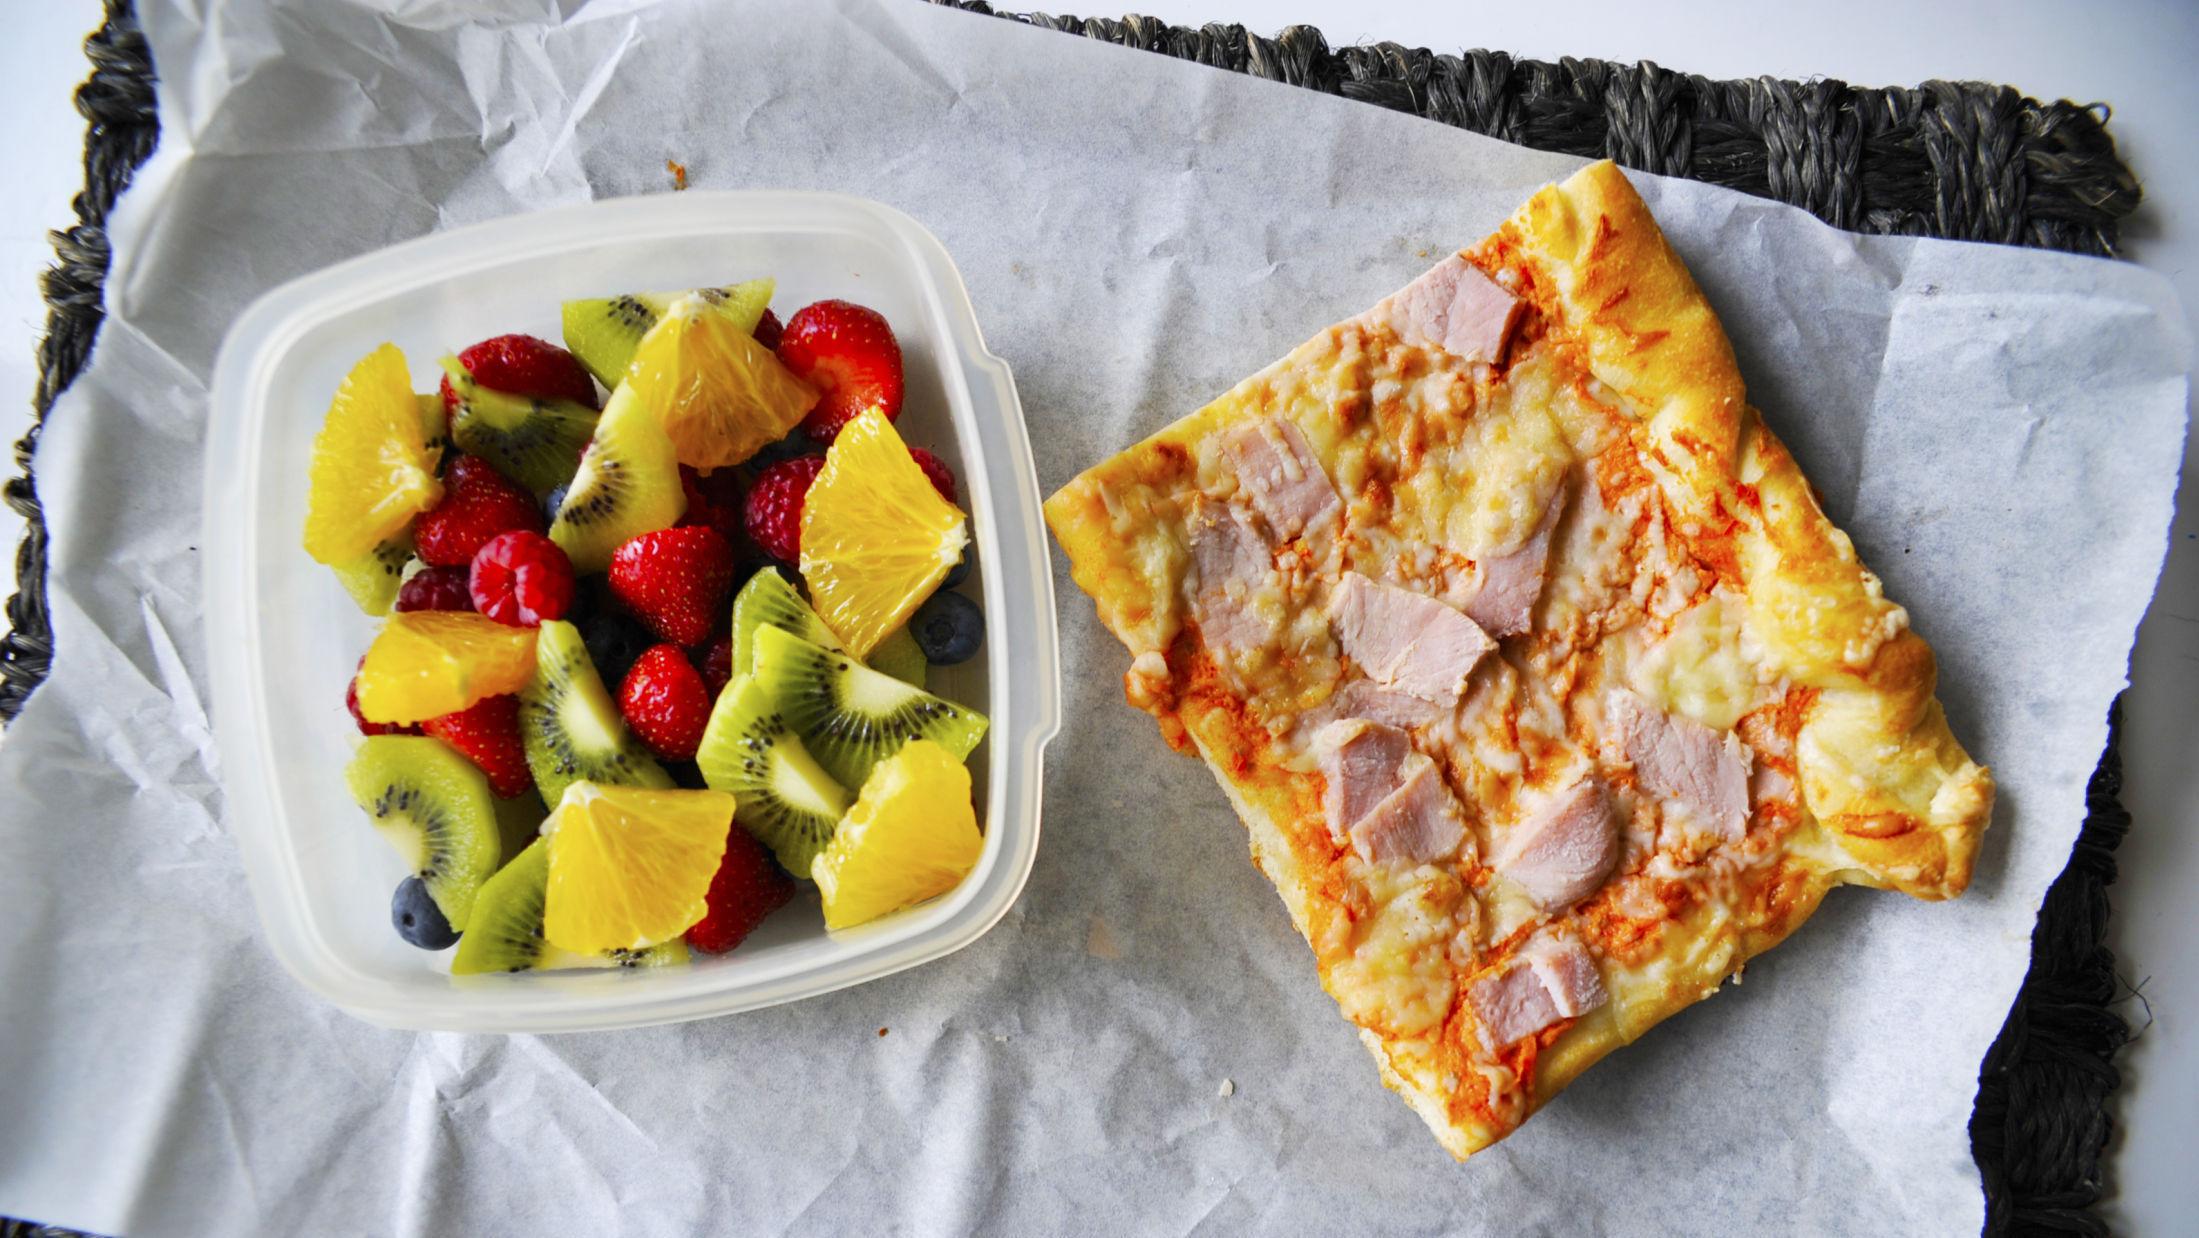 DAGEN FØR: La det være igjen litt pizza når du lager hjemmelaget, og du har en pizzablings i boksen dagen etter. Foto: Jon Krog Pedersen